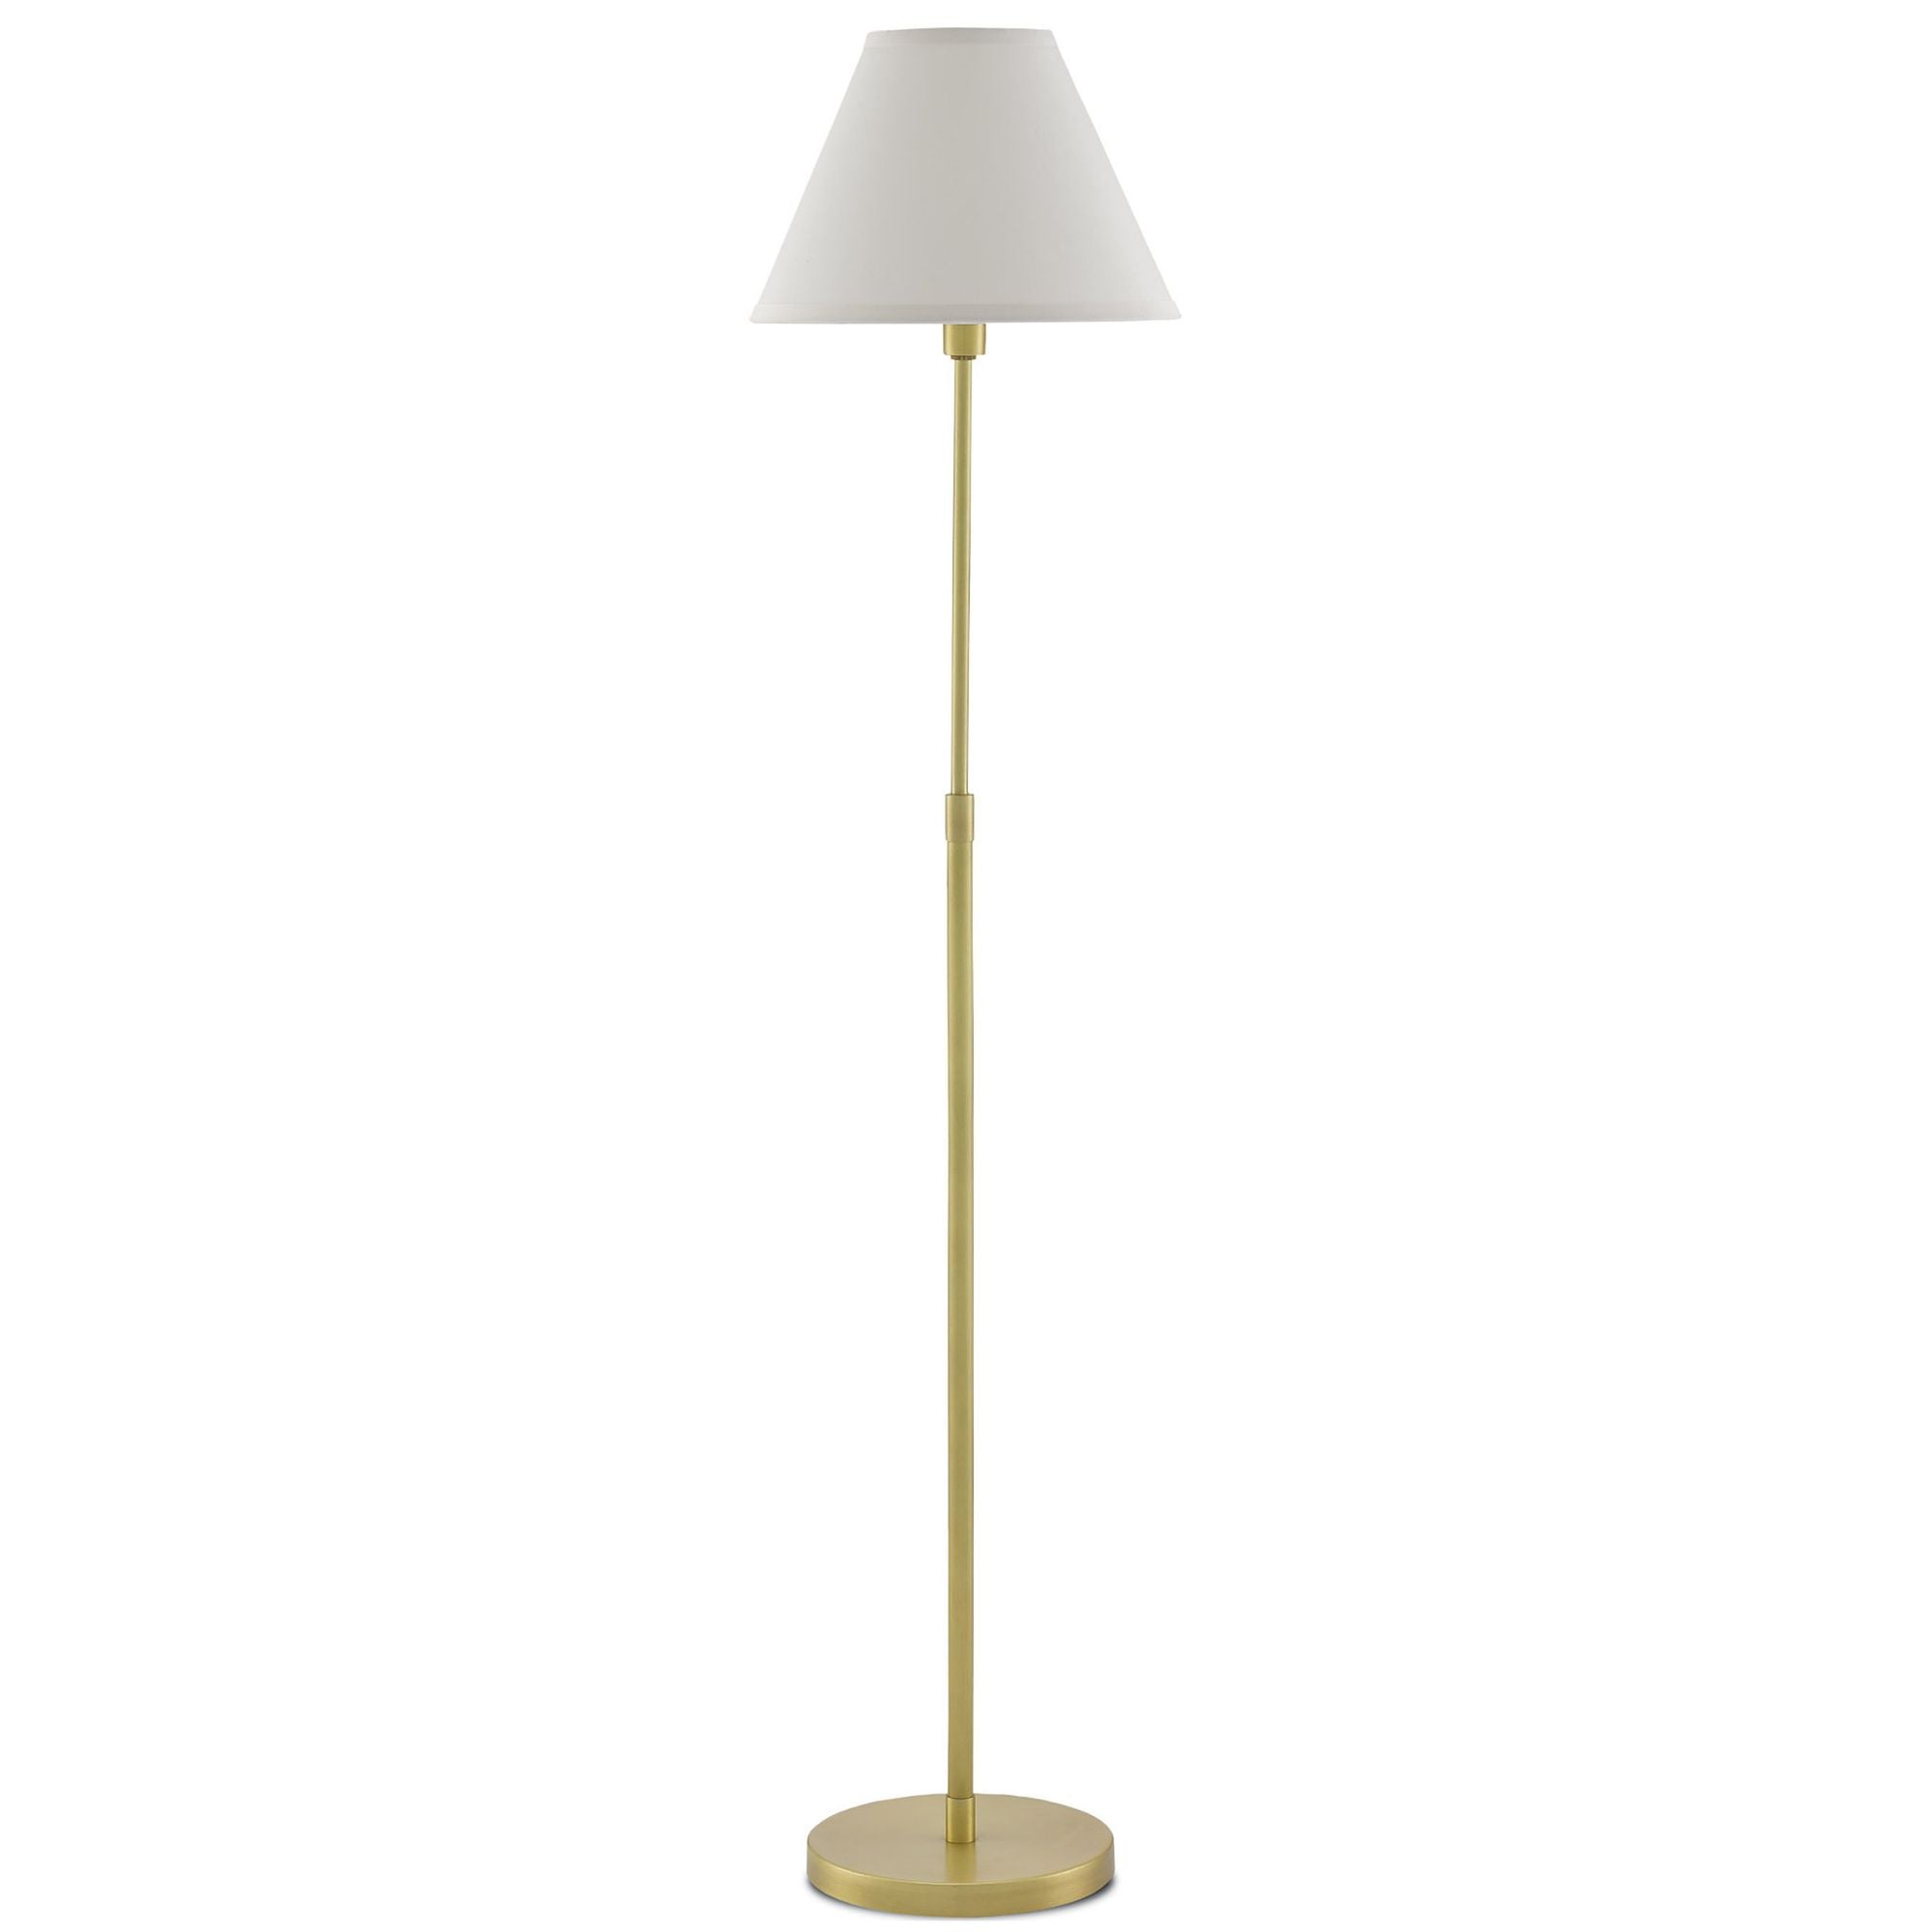 Dain Brass Floor Lamp - Antique Brass